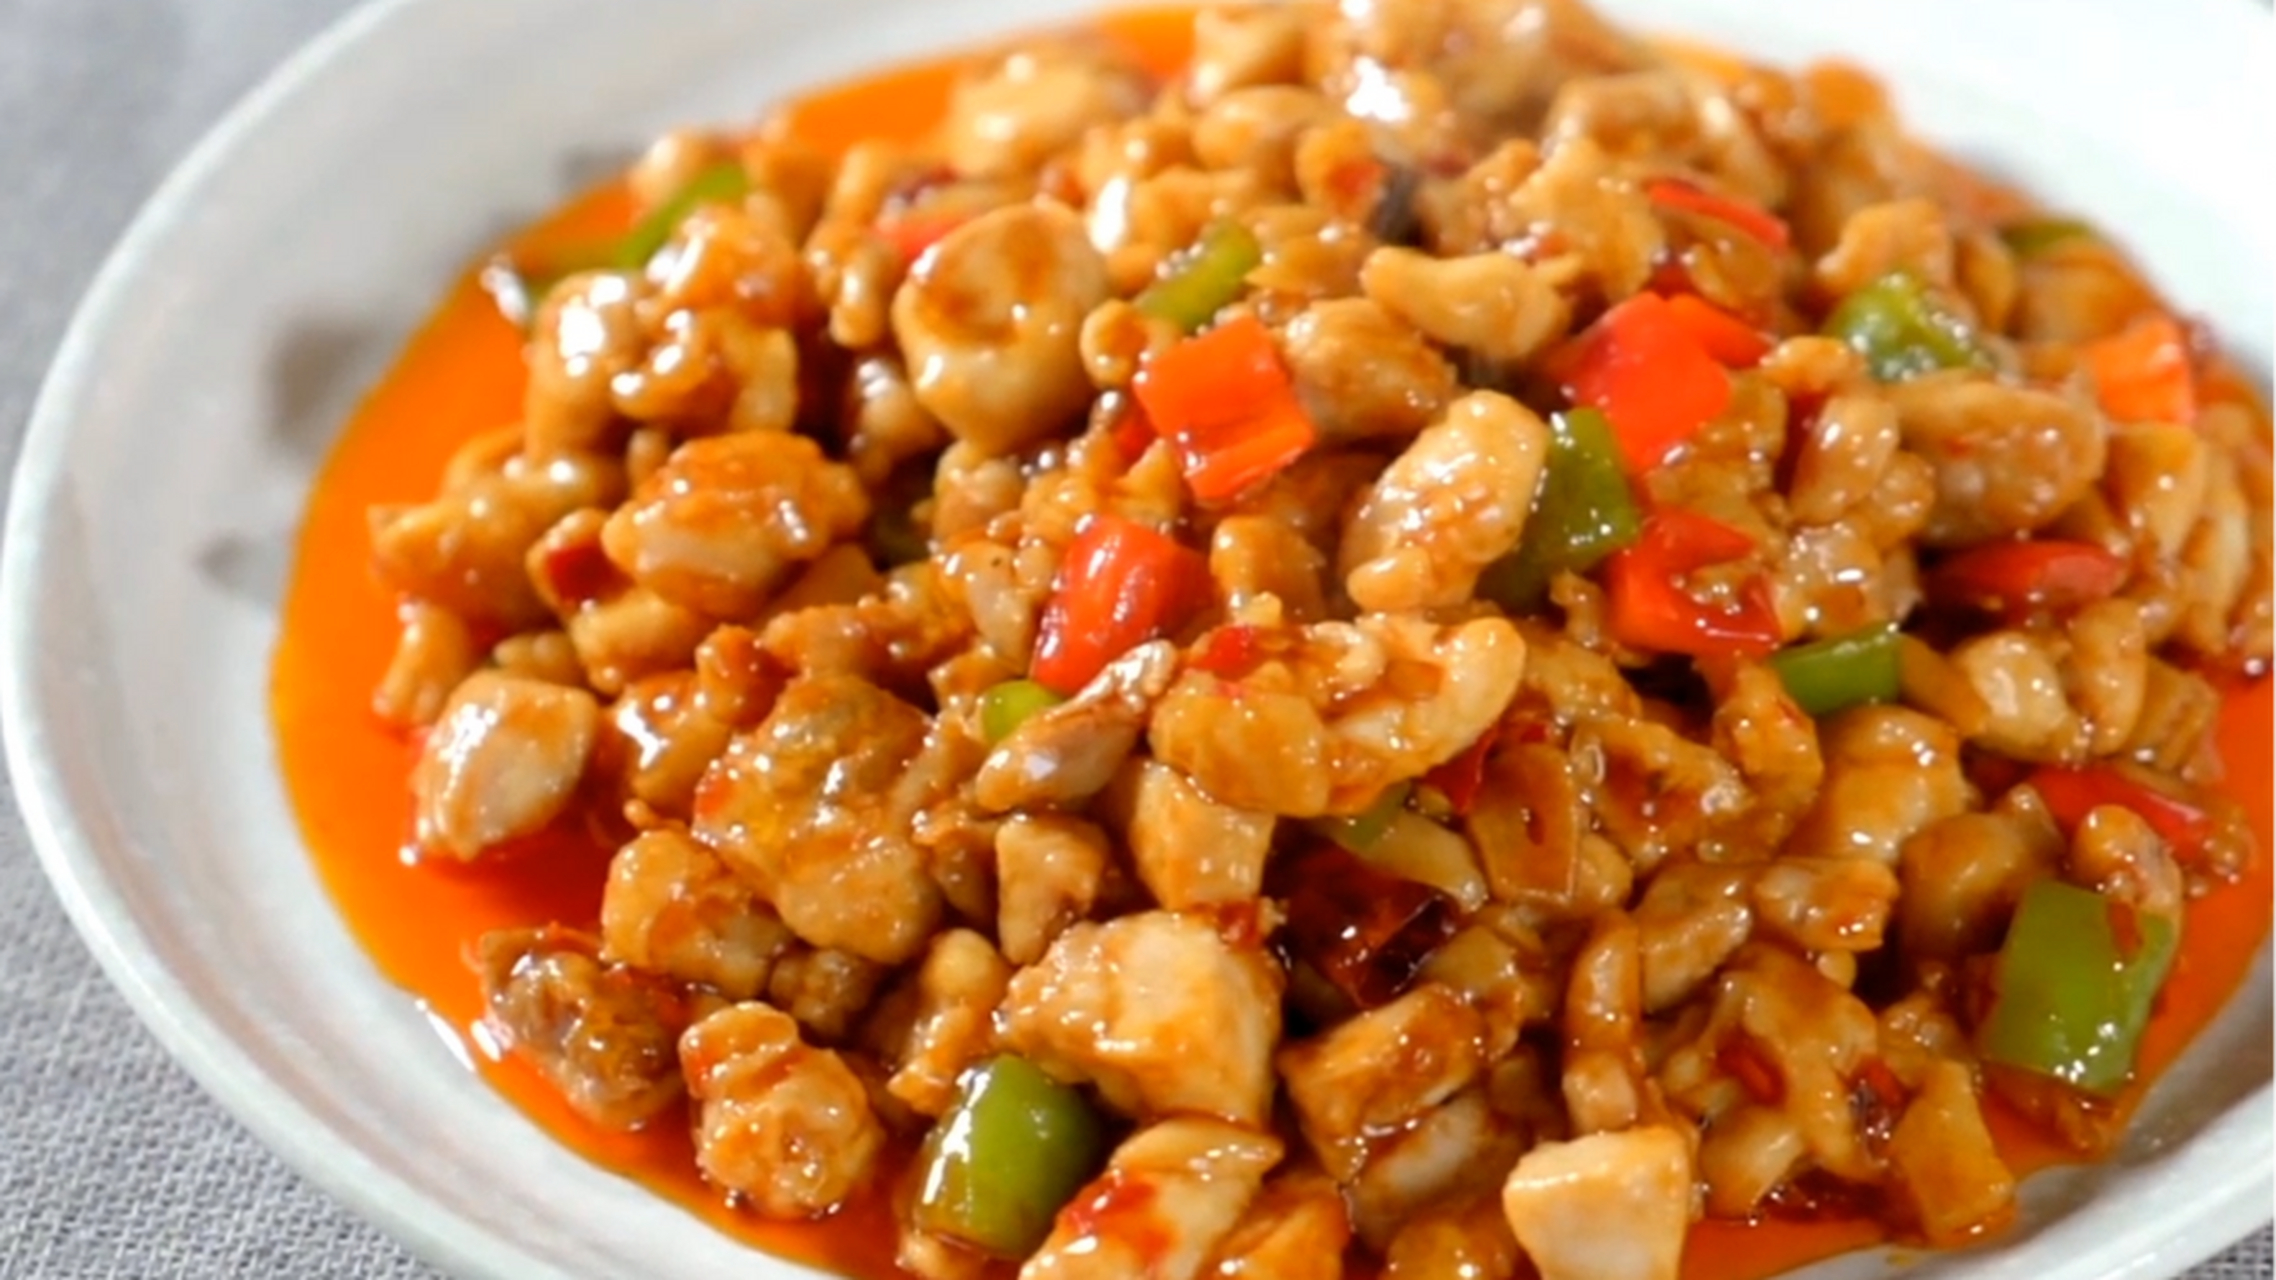 99辣子鸡丁的做法99 95辣子鸡丁是一道传统的川菜菜品,以鸡肉为